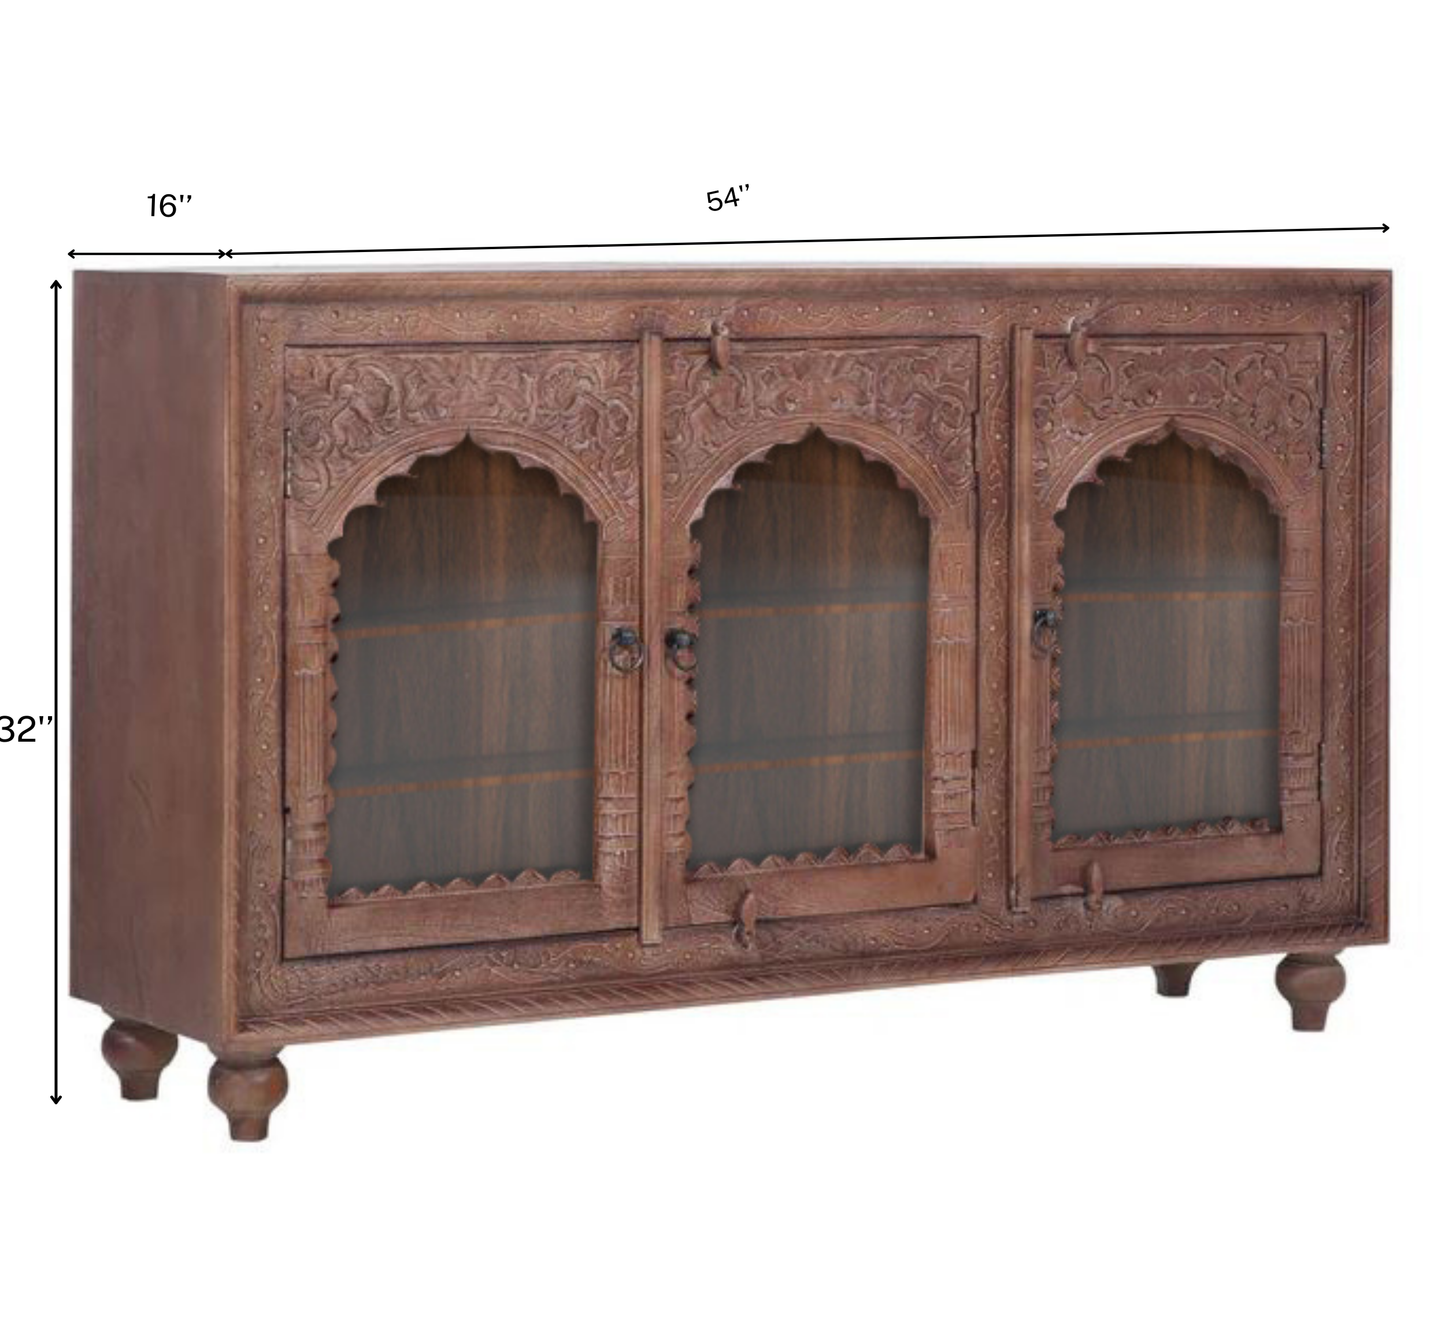 Aakrit Wooden 54" Crockery Cabinet